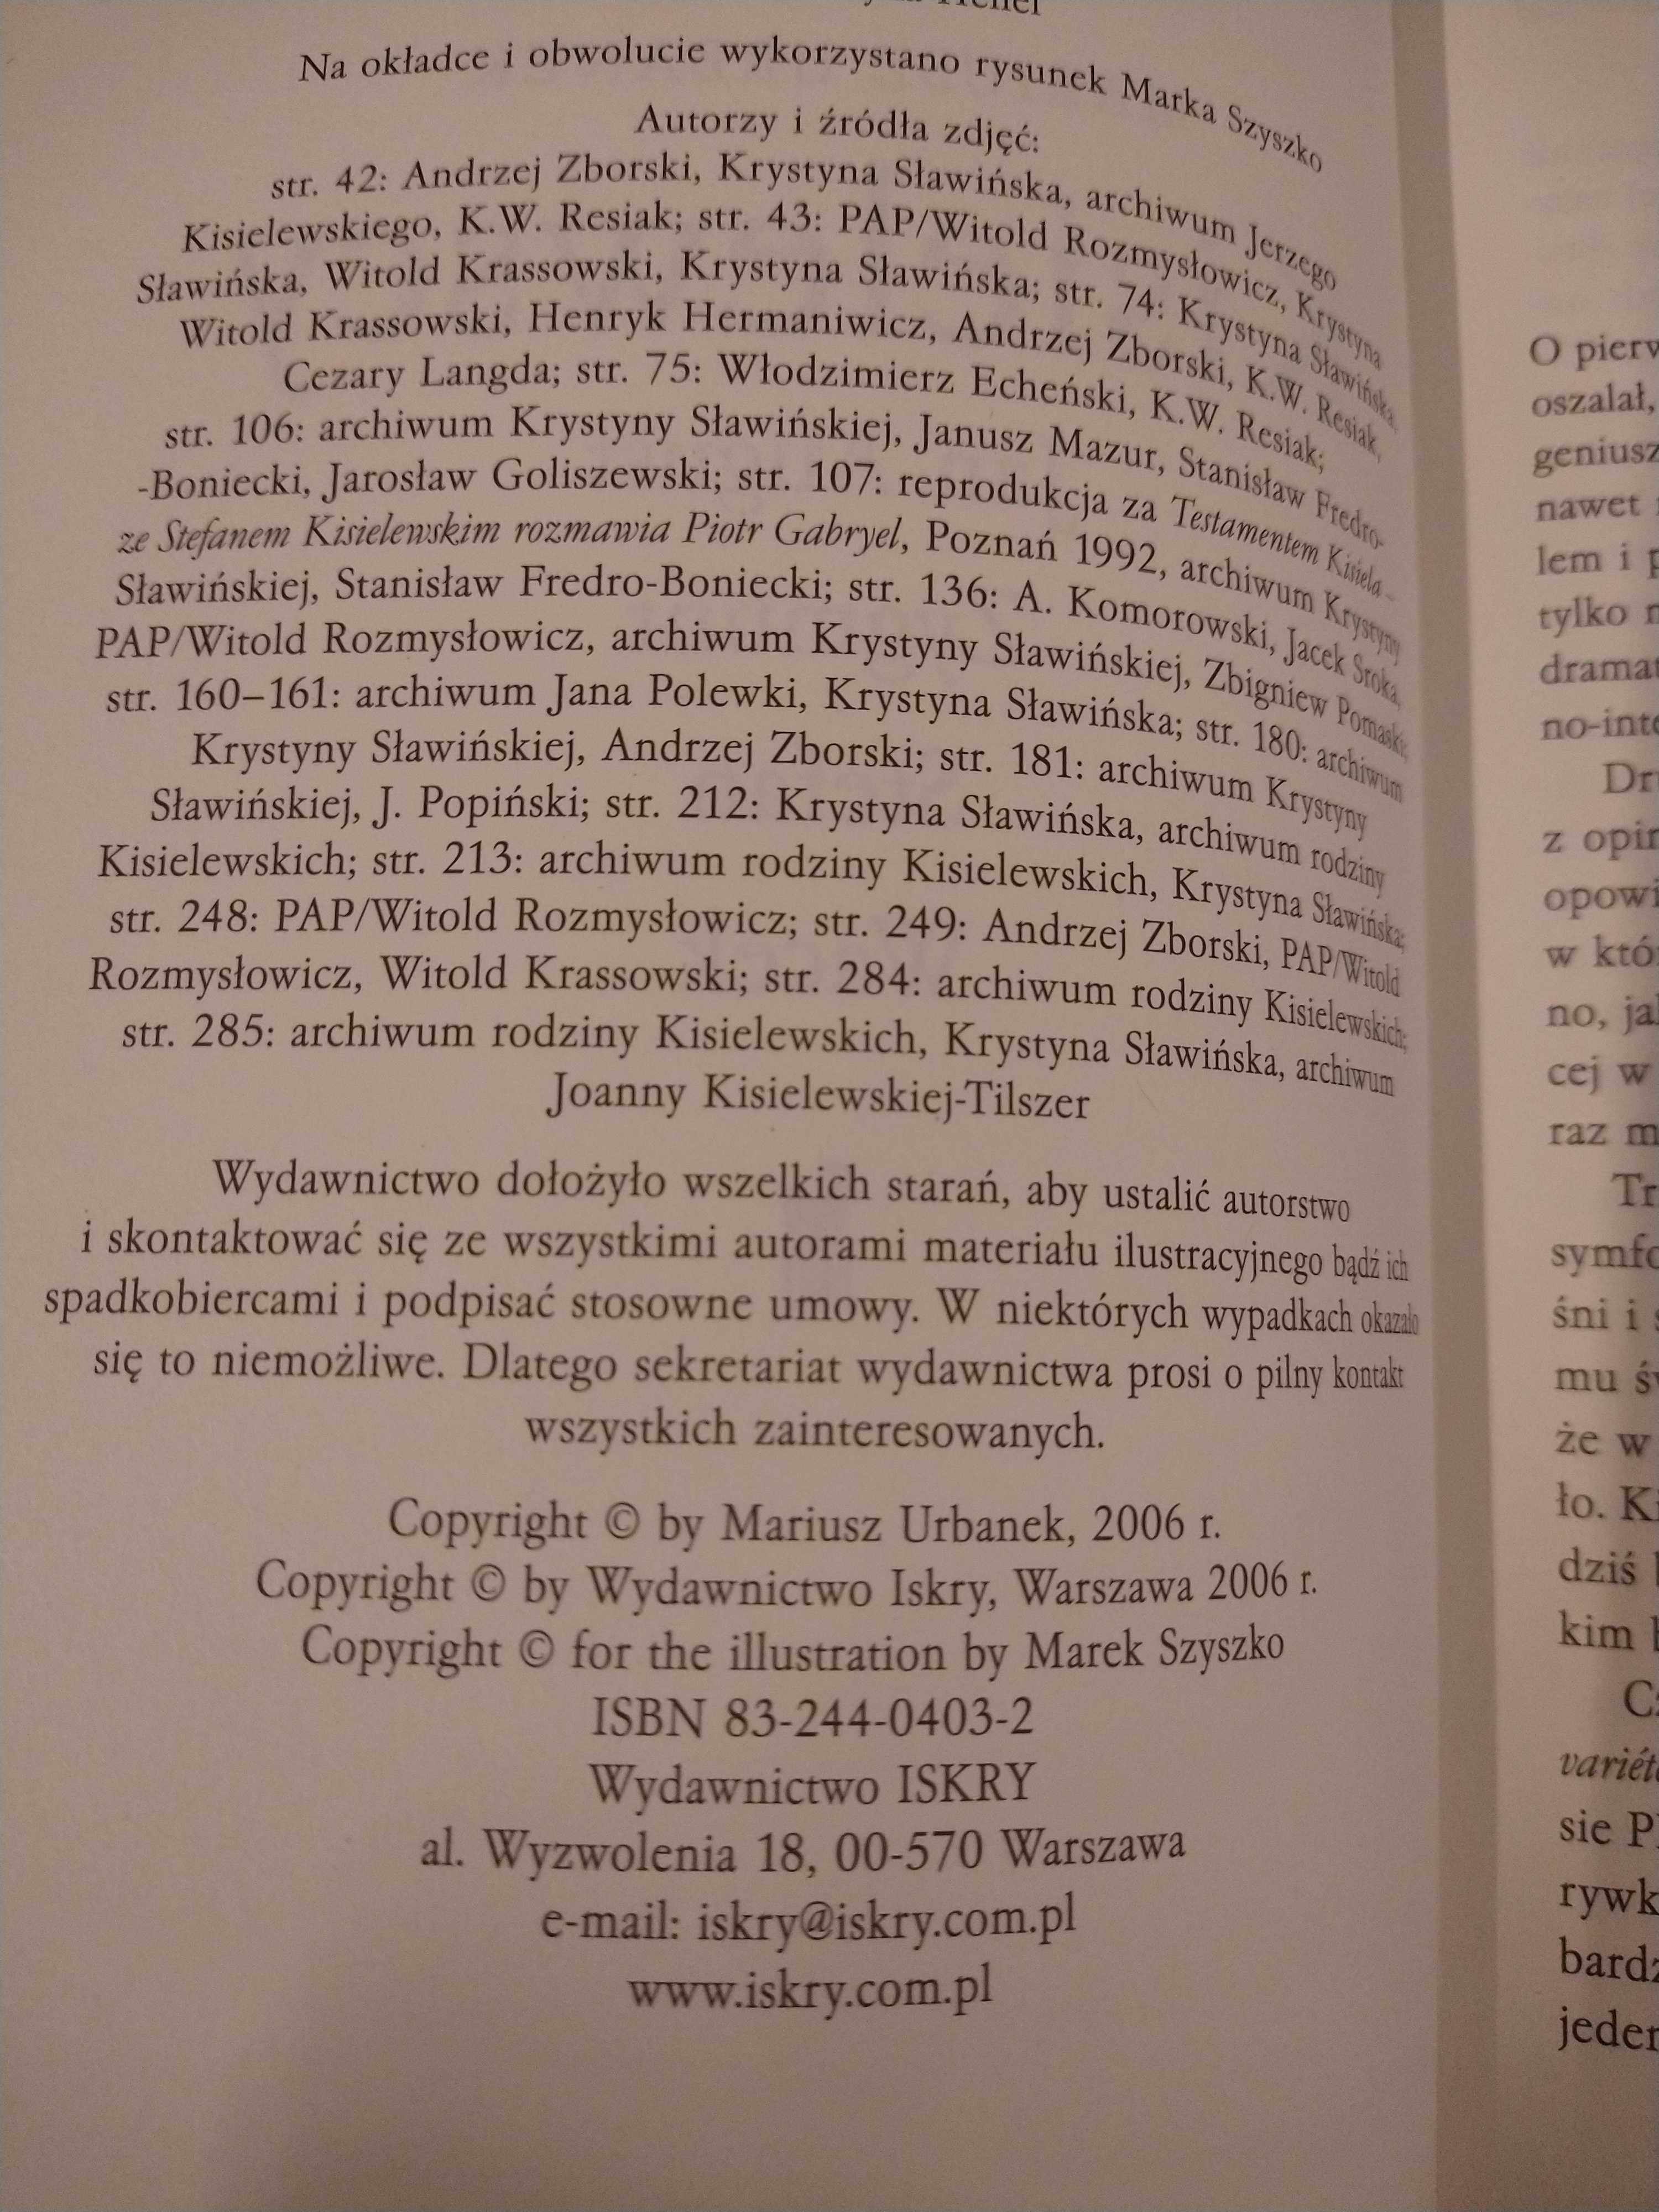 Mariusz Urbanek, Kisielewscy: Zygmunt, Jan August, Stefan, Wacek